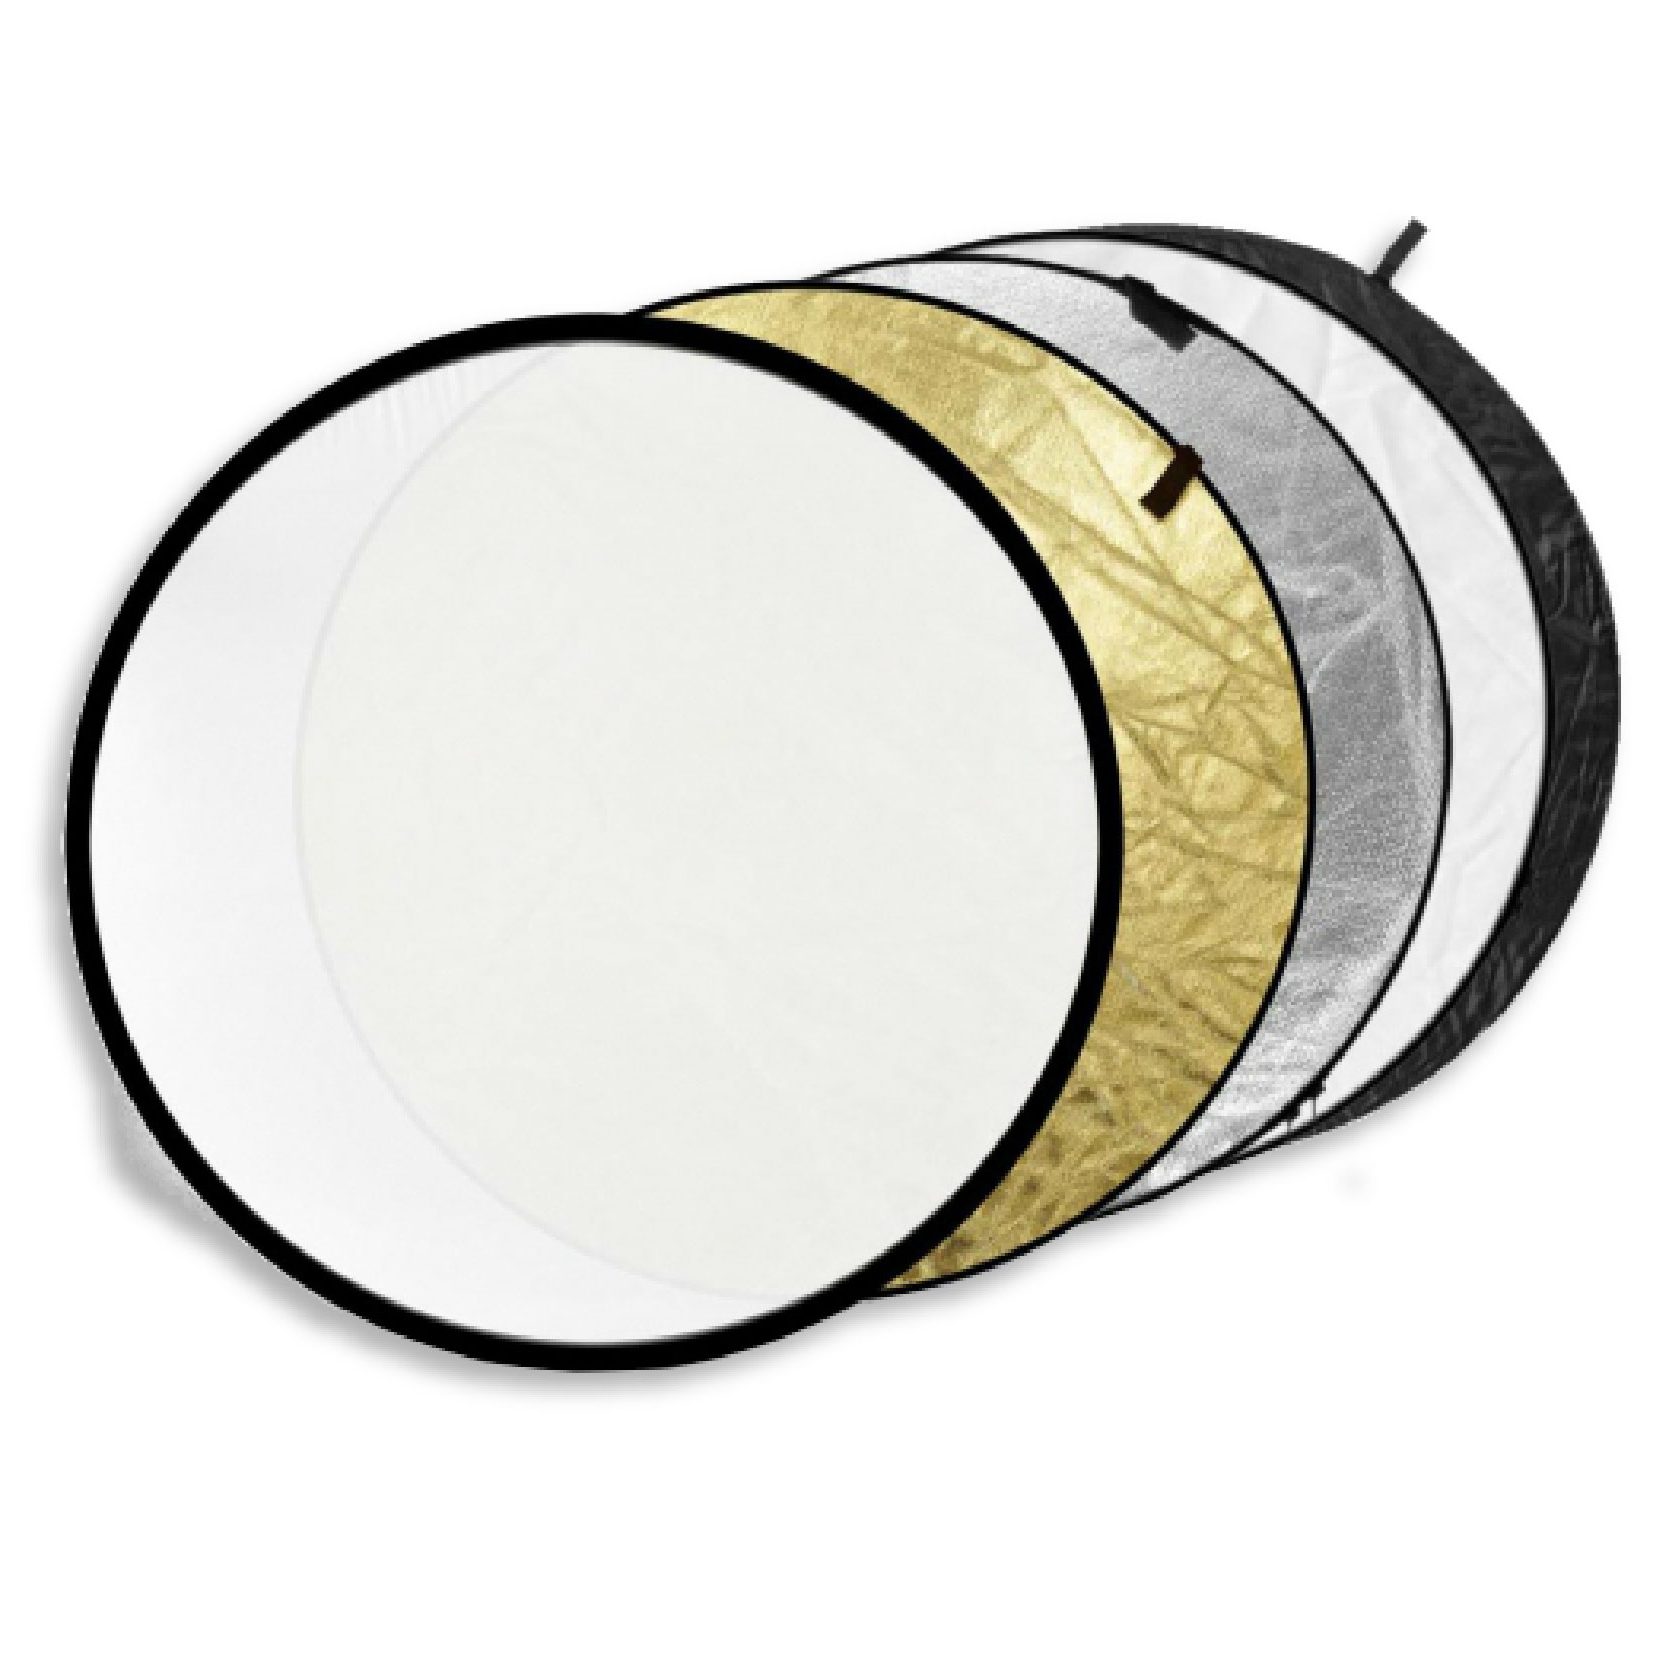 Flex Reflector 110cm GODOX 5 en 1 (Tonos fuertes: Oro, plata, negro,  blanco, translúcido) - Importaciones Arturia